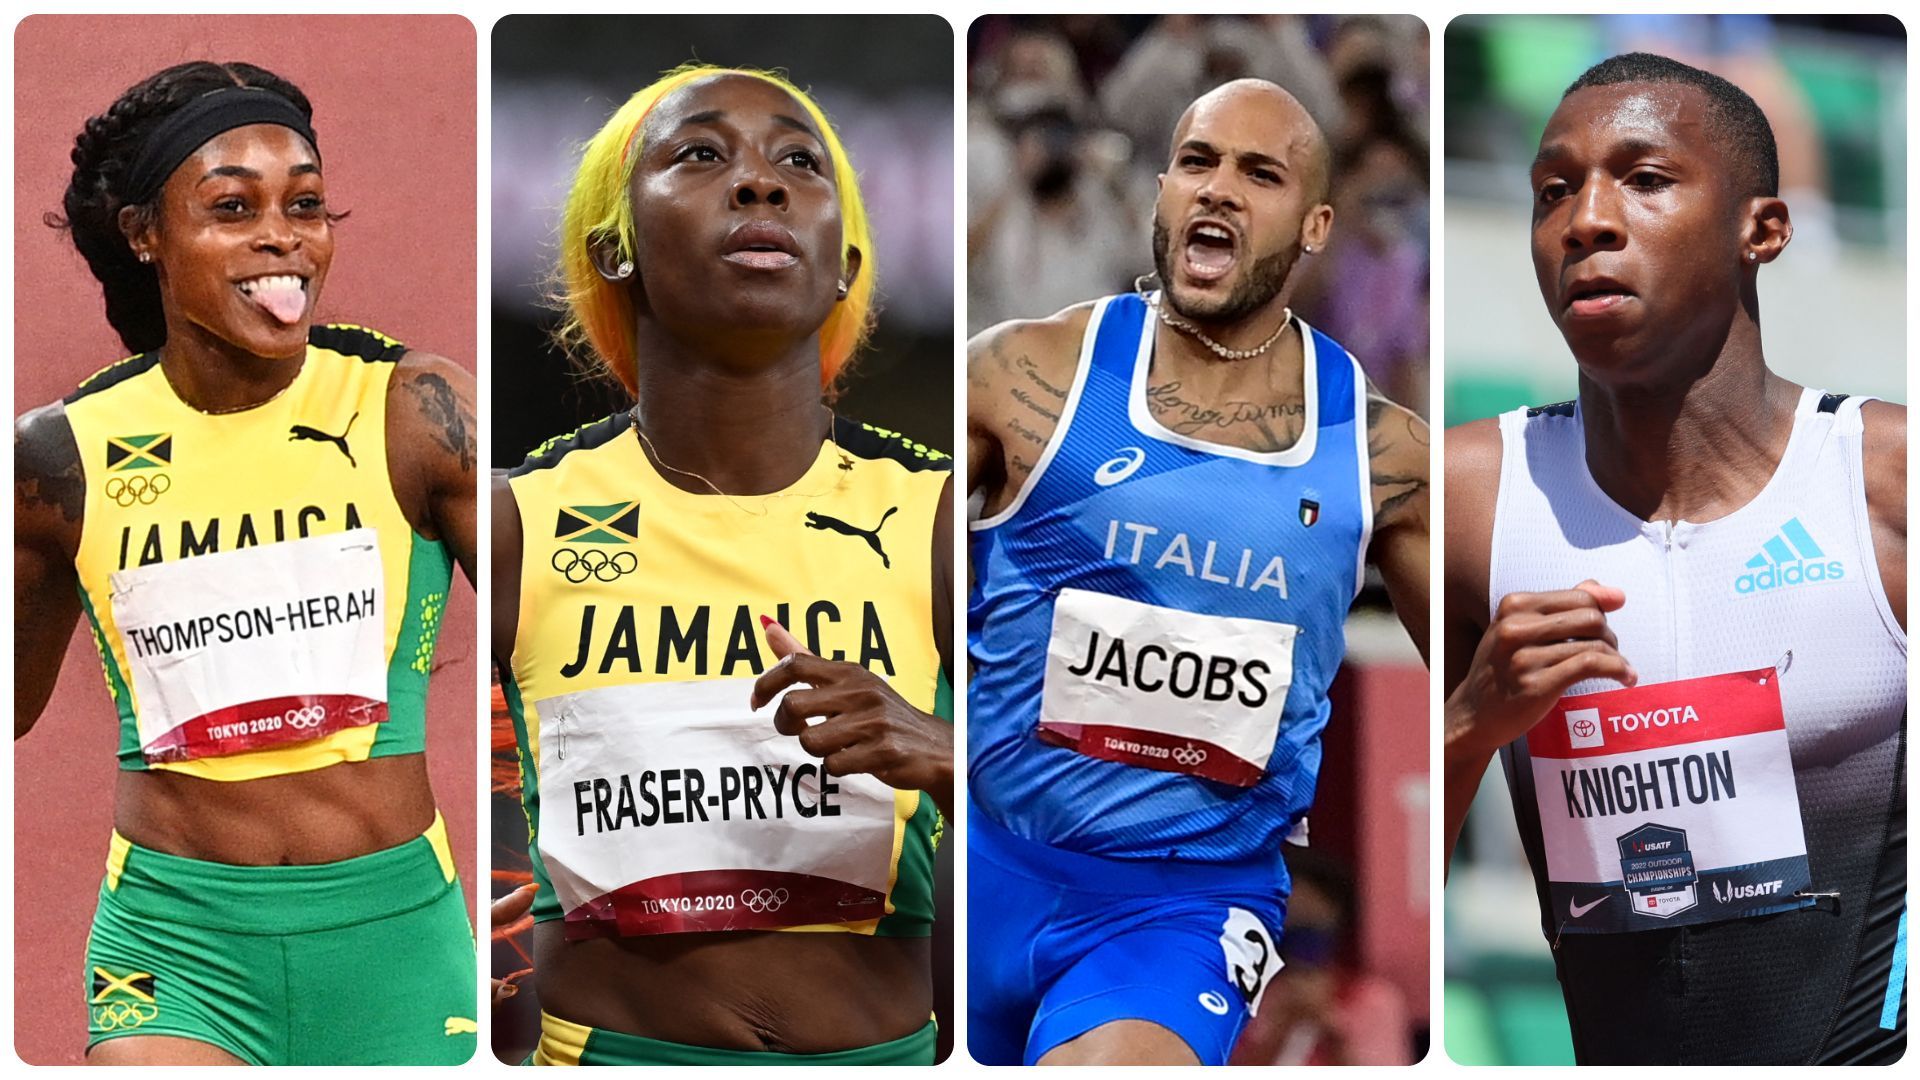 Le sprint sera encore un des événements phares de ces Mondiaux d'athlétisme.